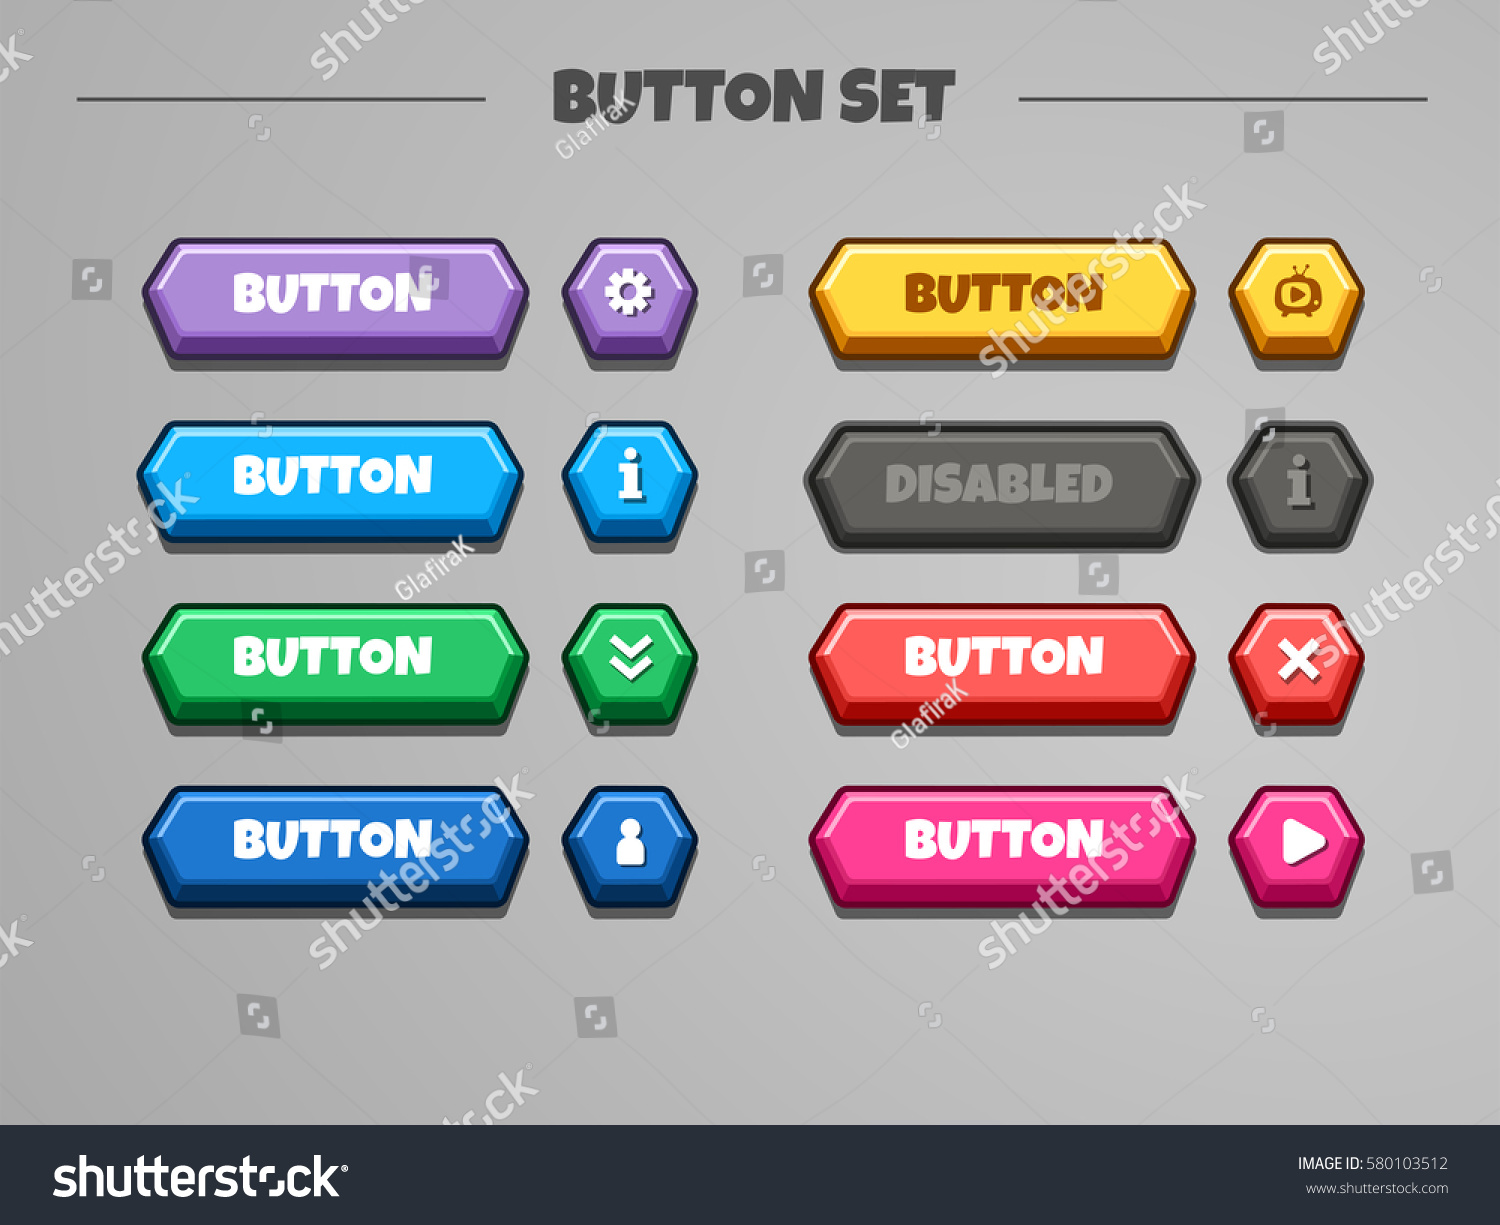 3d Buttons Set Vector Gui Assets Stock Vector 580103512 - Shutterstock